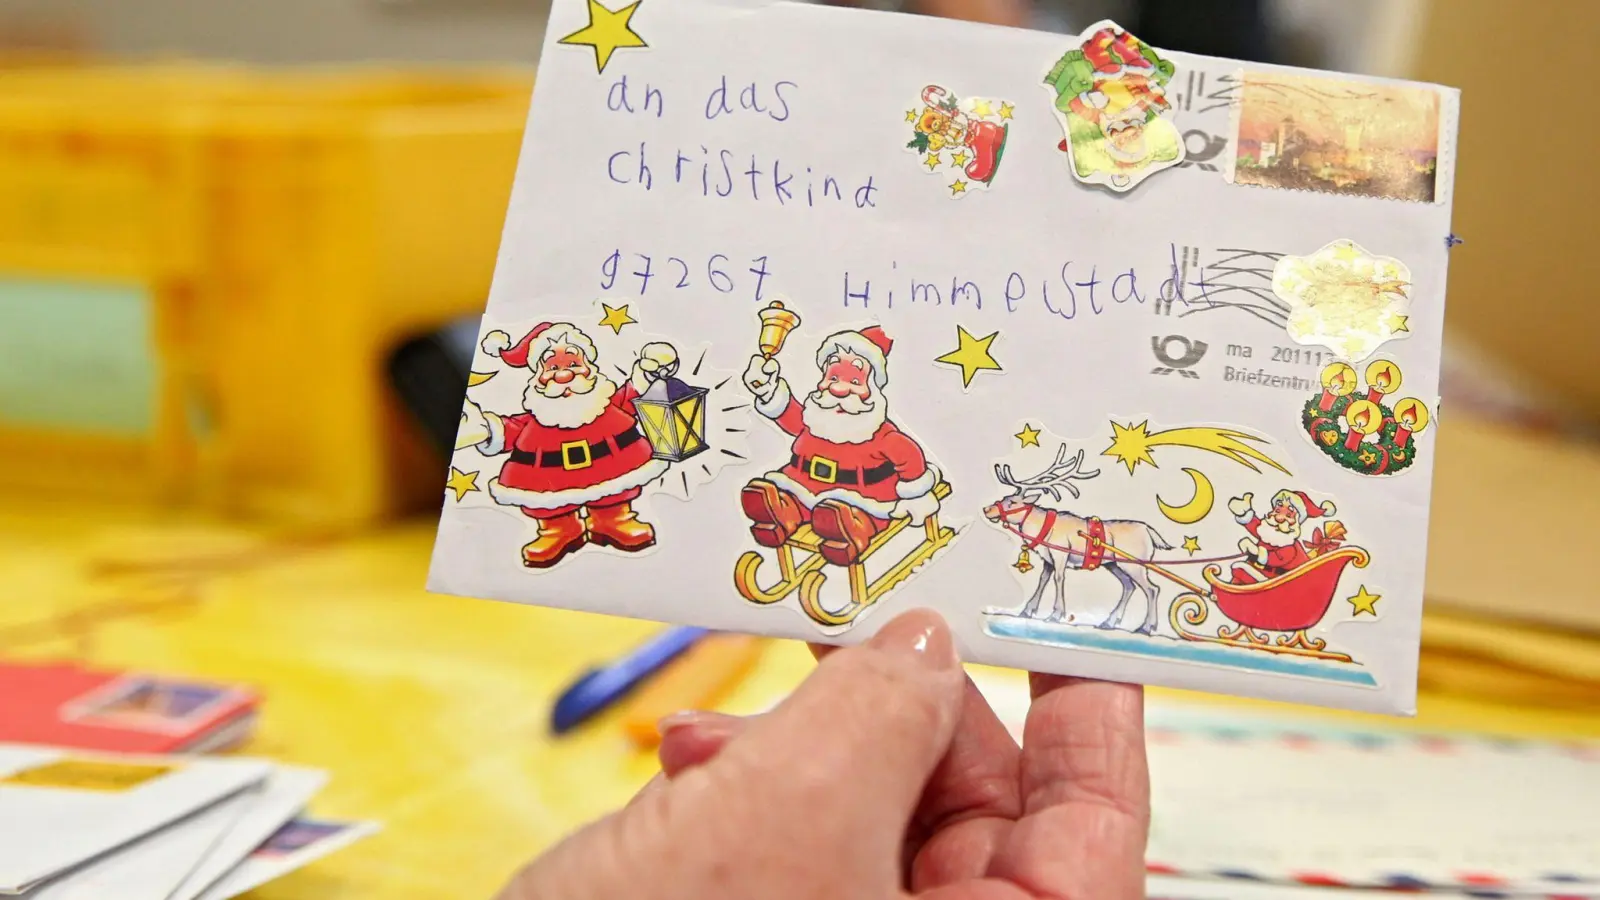 Der Brief eines Kindes an das Christkind ist im einzigen bayerischen Weihnachtspostamt zu sehen. (Foto: Daniel Karmann/dpa/Archivbild)